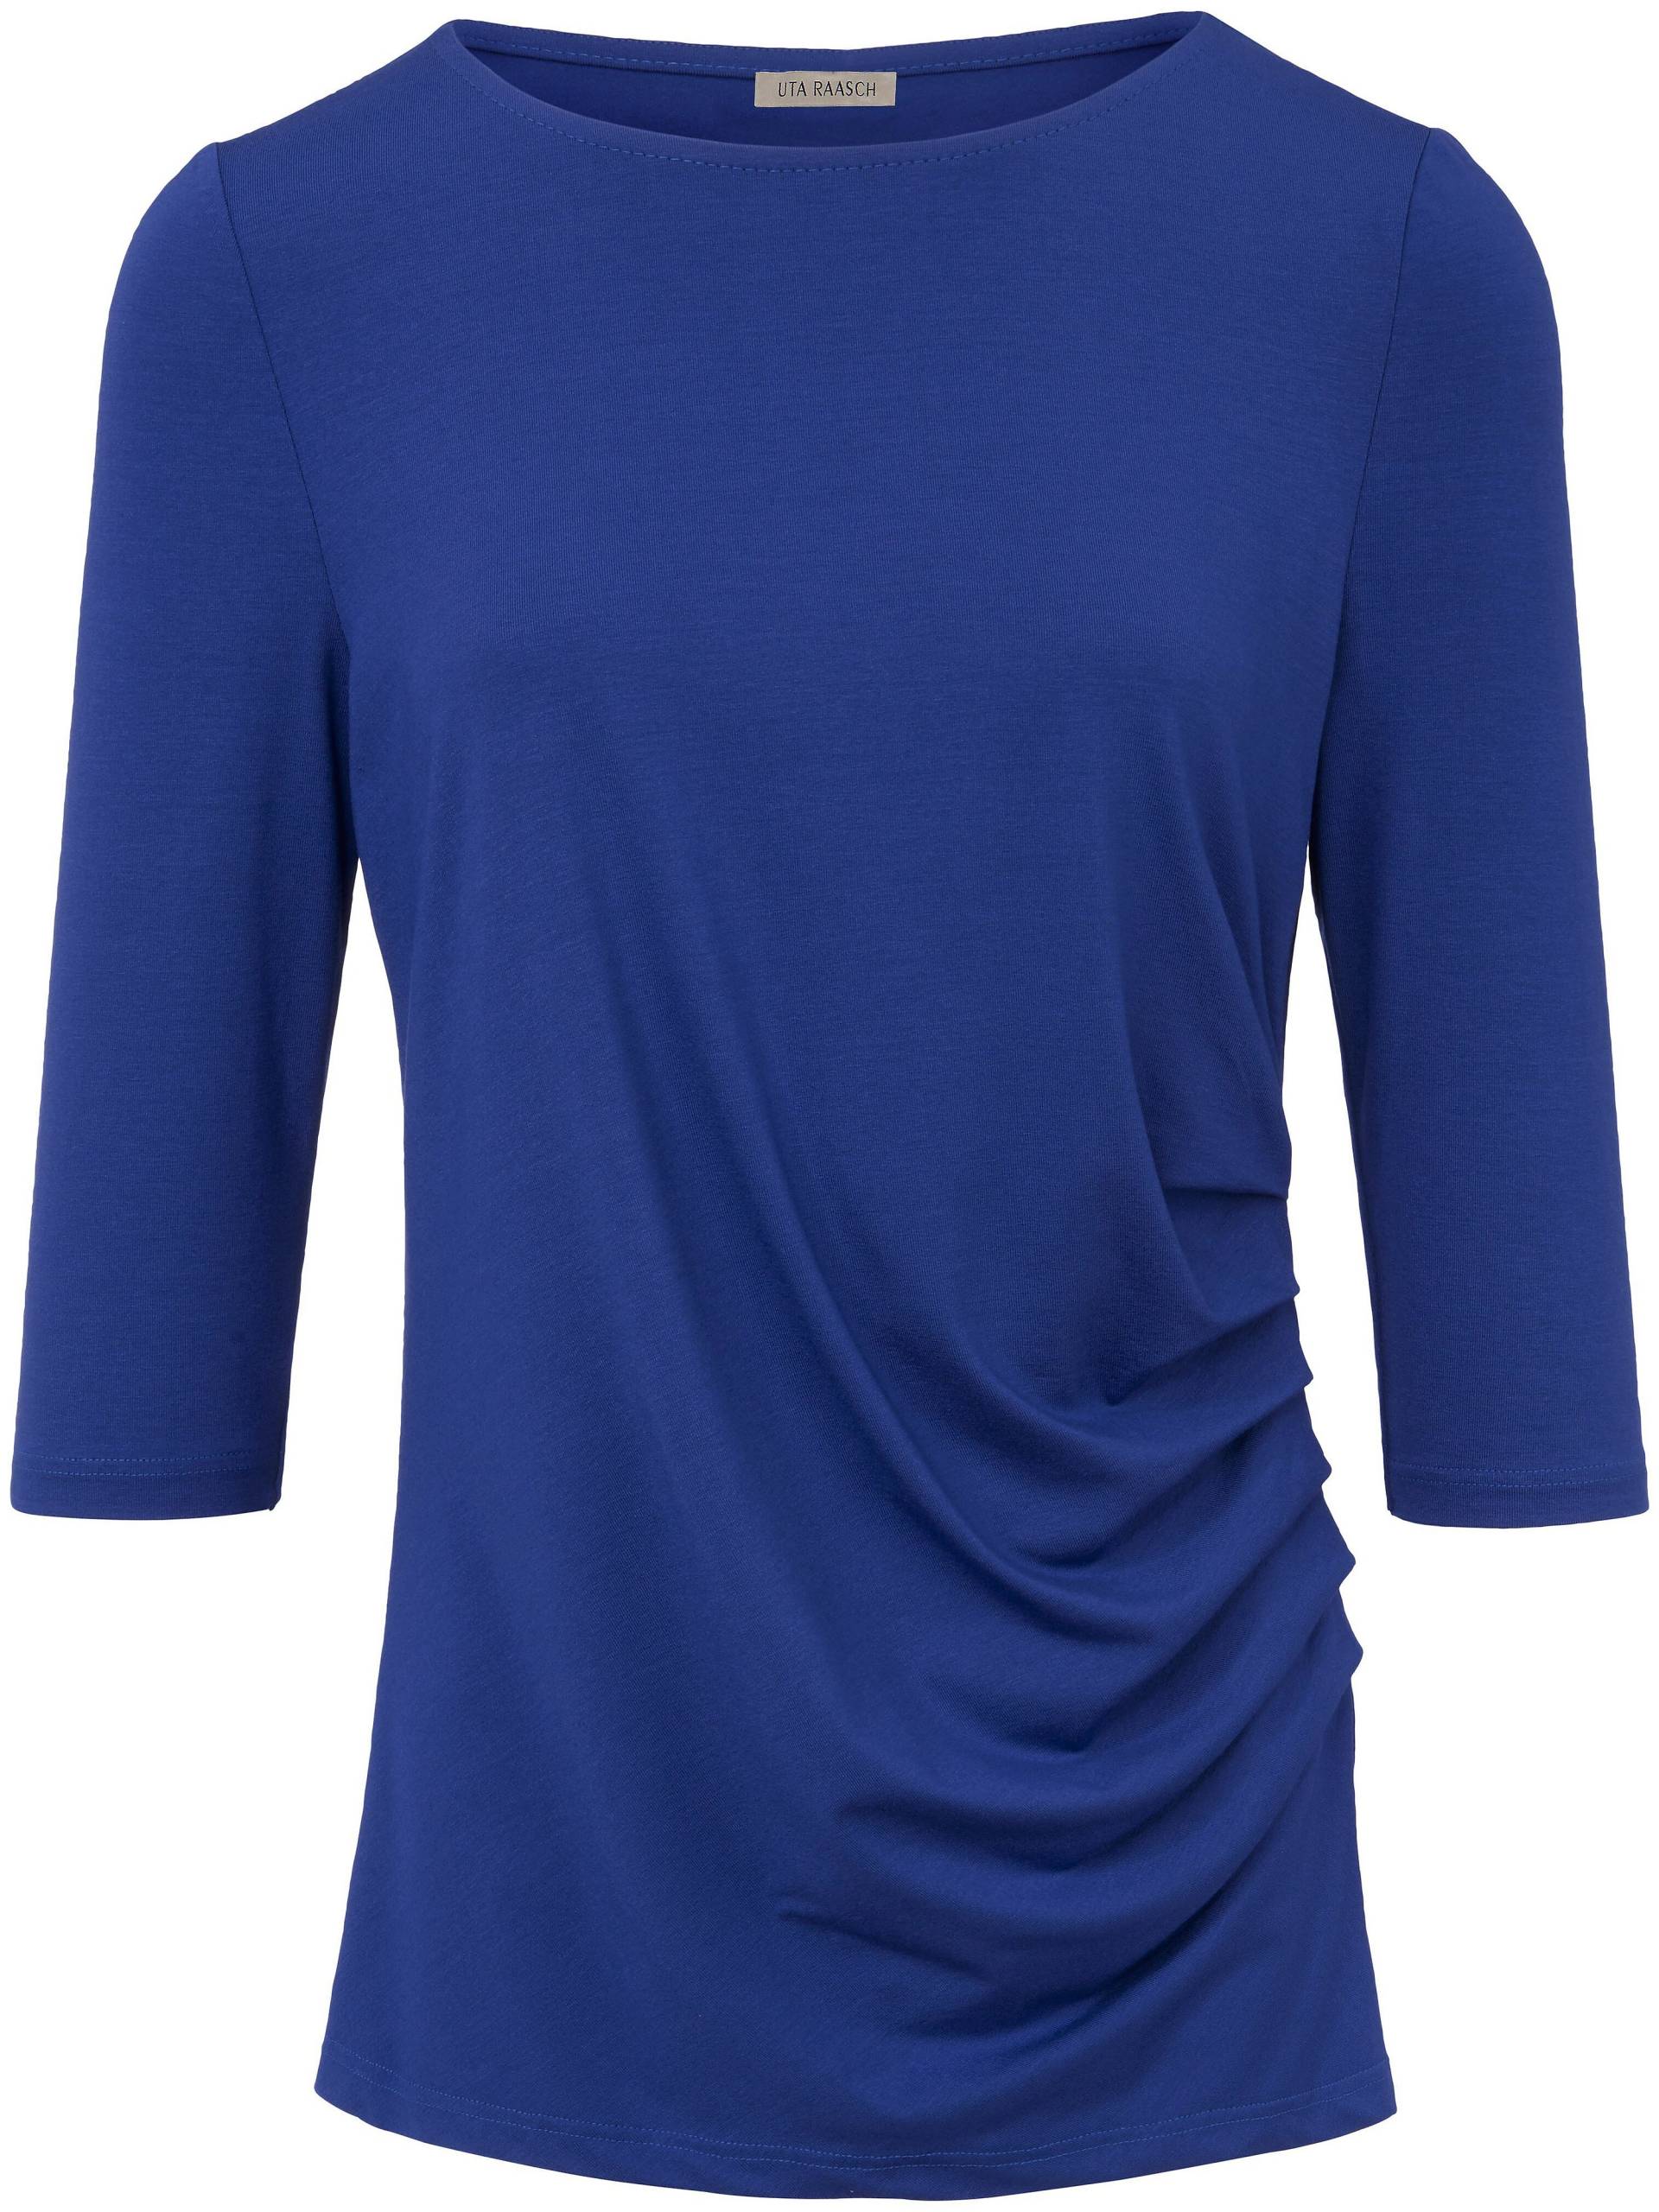 Rundhals-Shirt 3/4-Arm Uta Raasch blau Größe: 48 von Uta Raasch